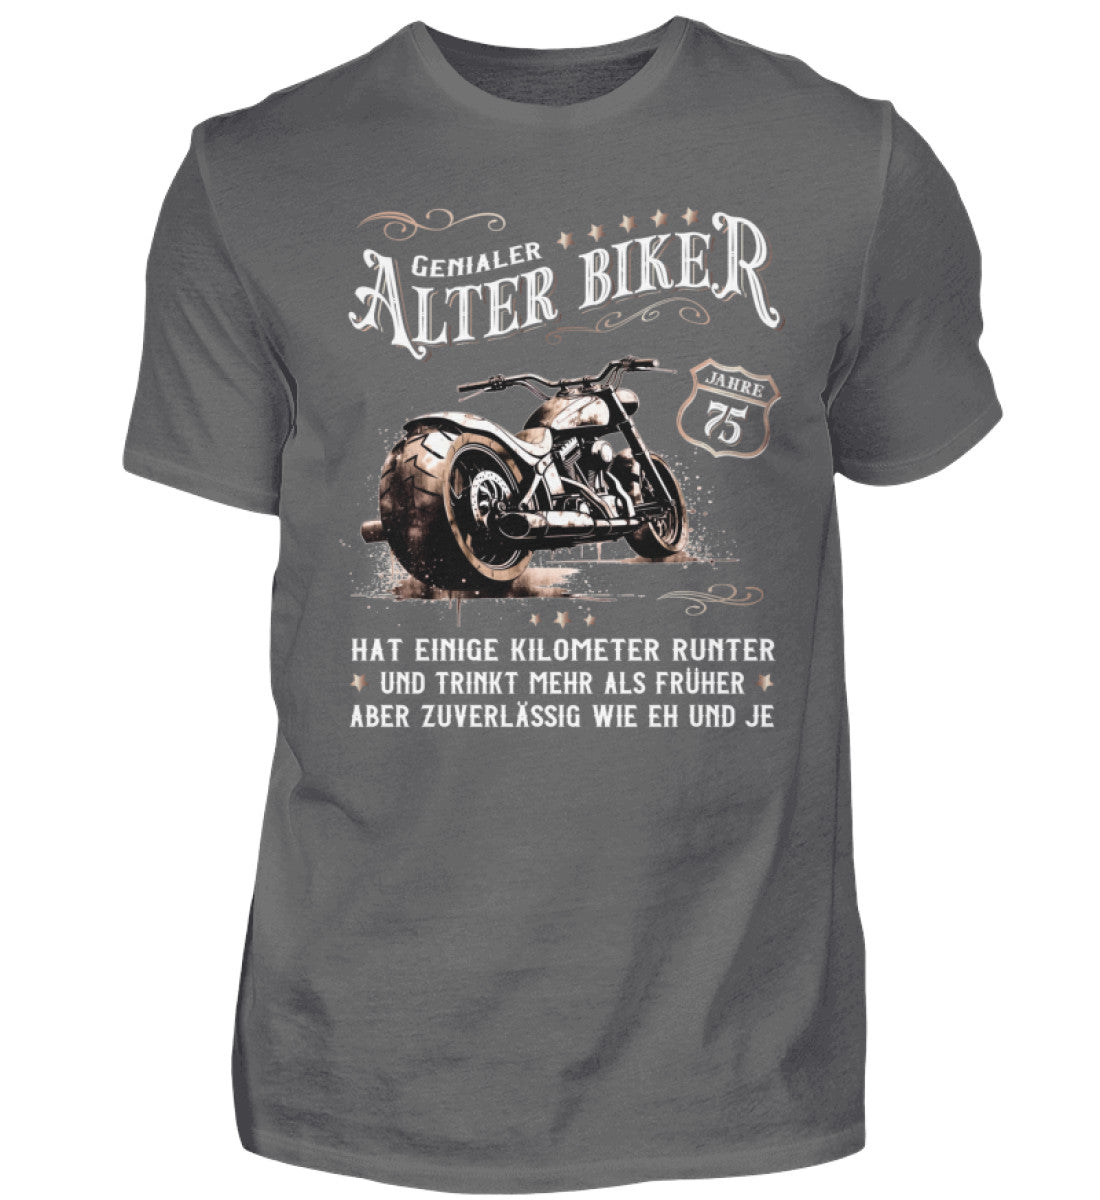 Ein Biker T-Shirt zum Geburtstag für Motorradfahrer von Wingbikers mit dem Aufdruck, Alter Biker - 75 Jahre - Einige Kilometer runter, trinkt mehr - aber zuverlässig wie eh und je - in grau.